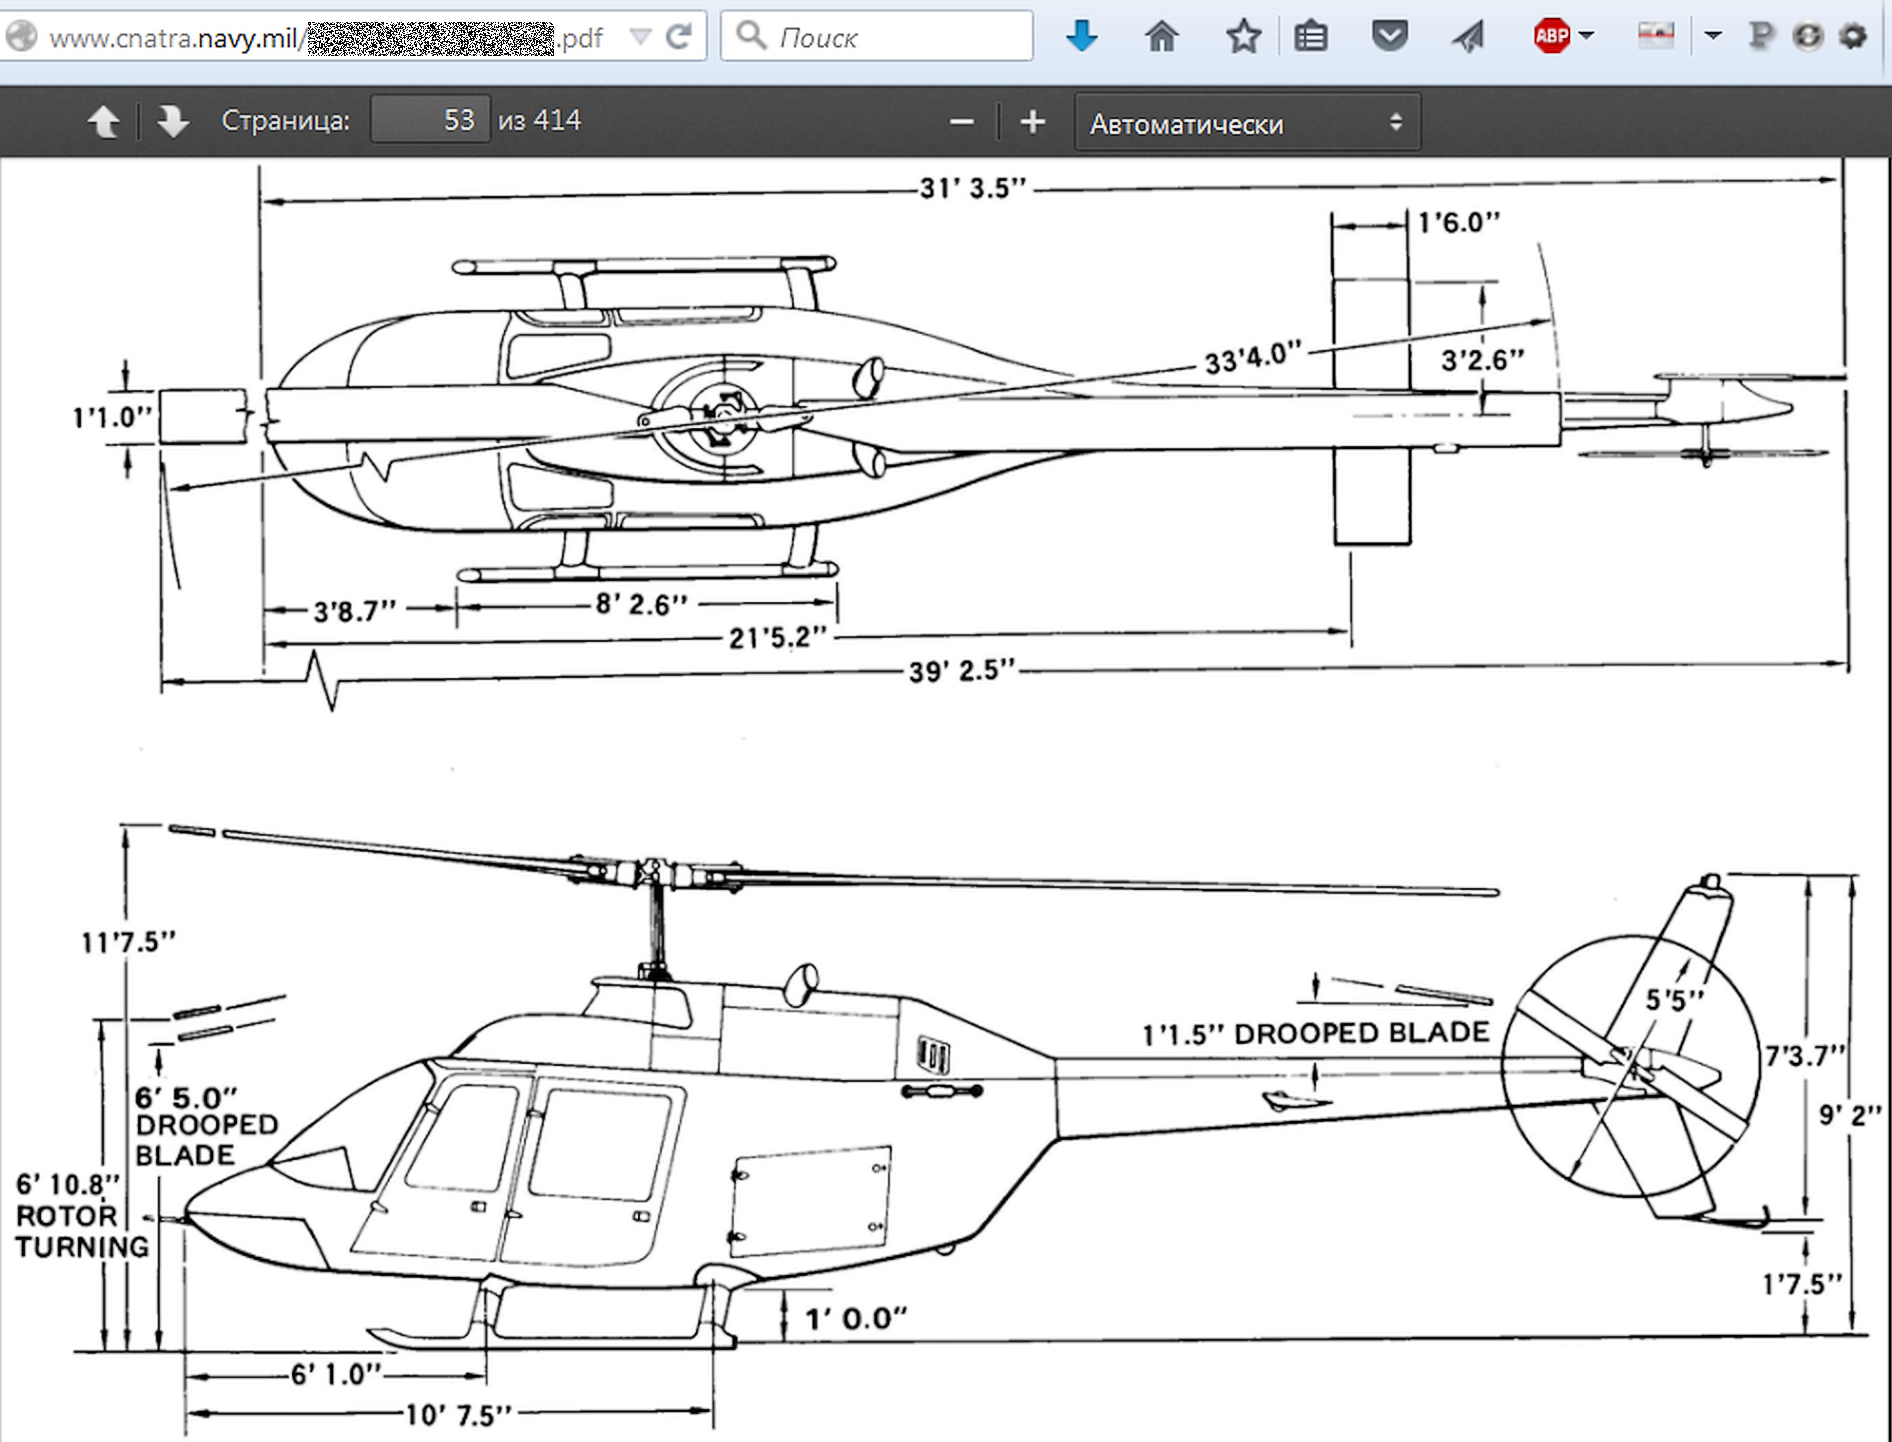 Чертеж из руководства к учебно-боевому вертолету TH-57С Sea Ranger